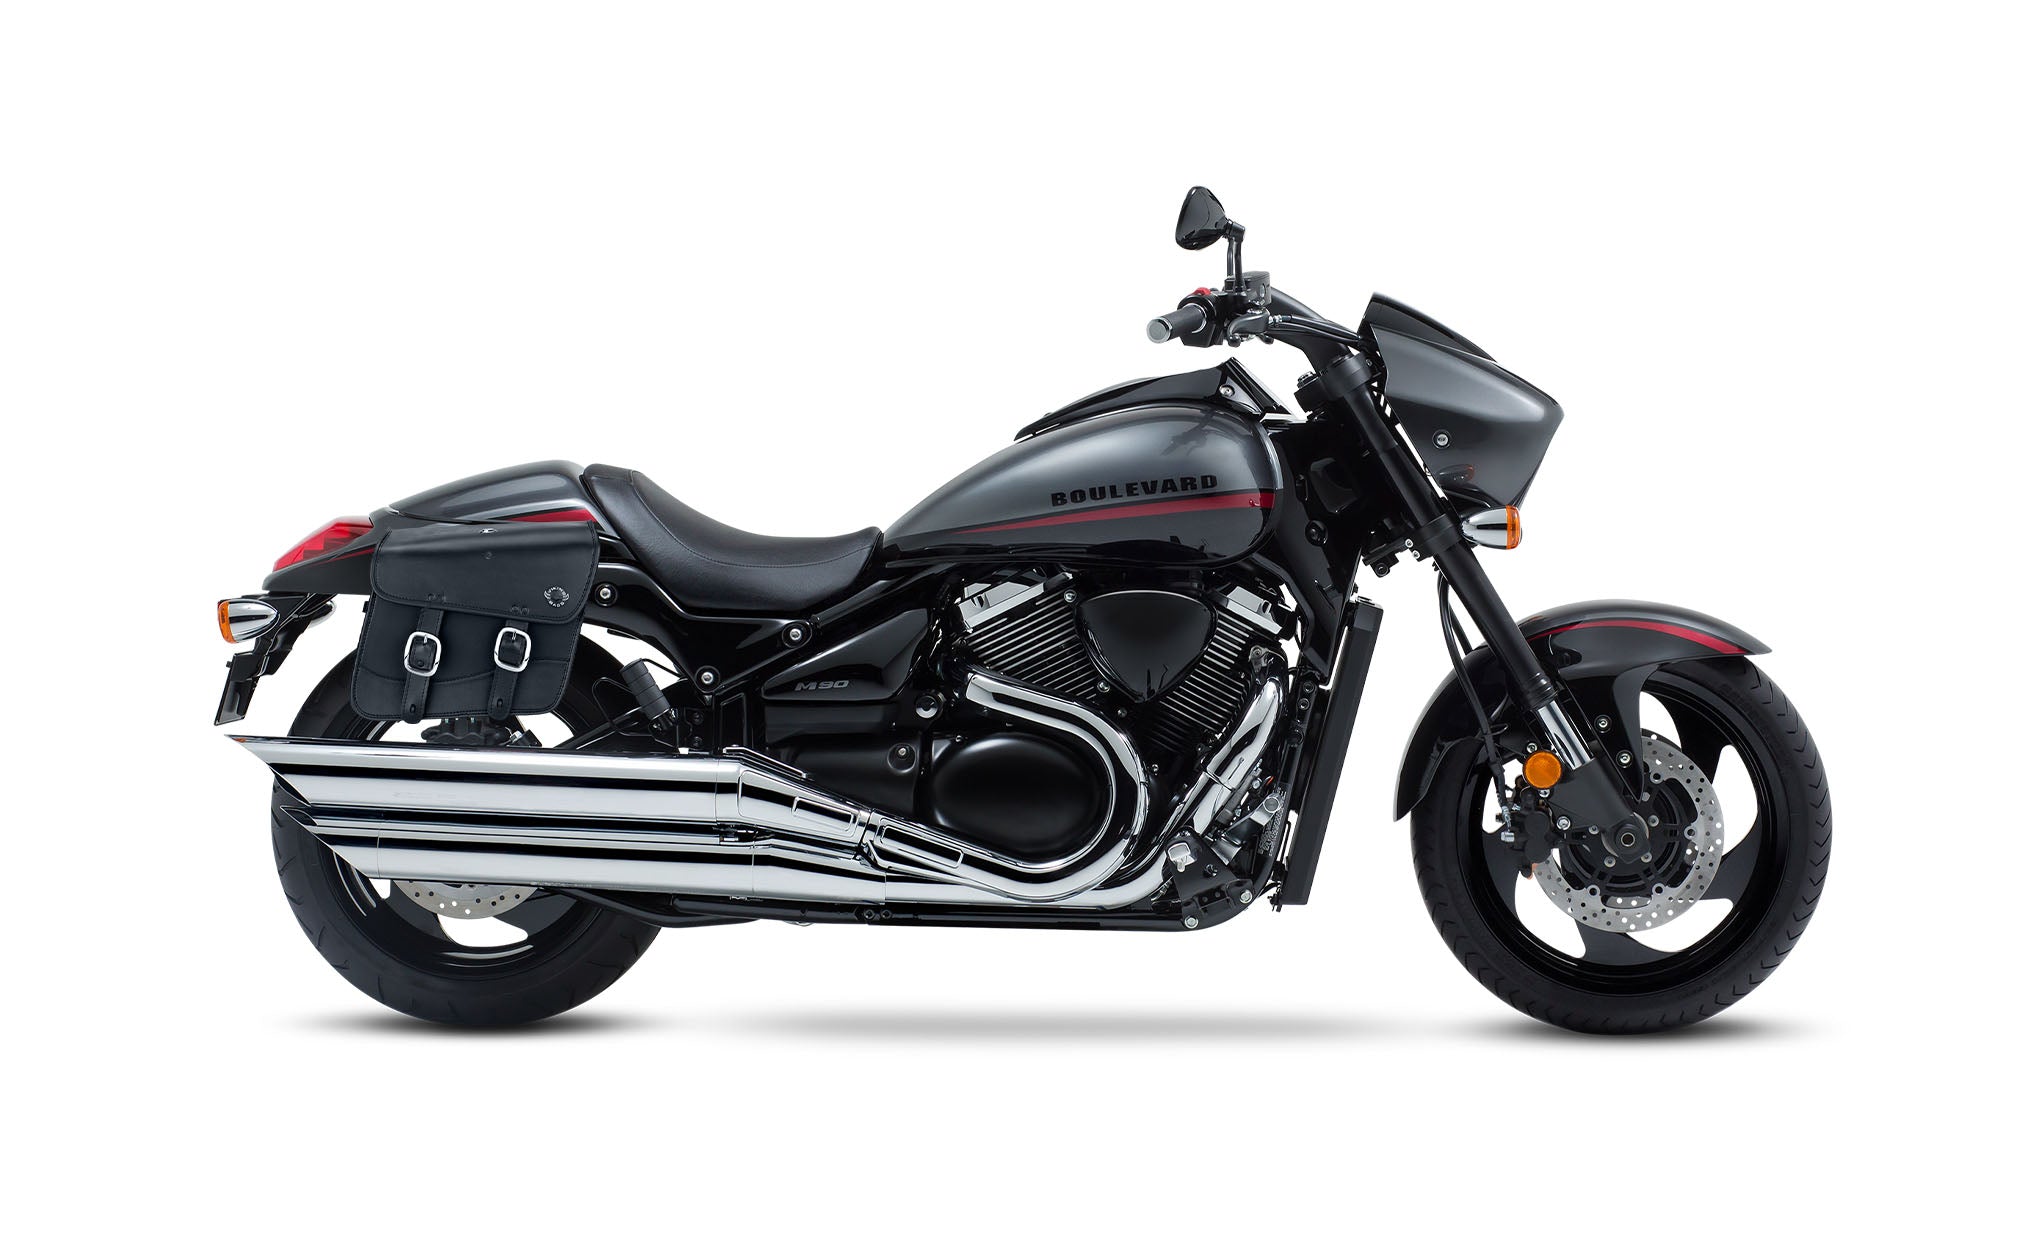 Viking Thor Medium Suzuki Boulevard M90 Vz1500 Leather Motorcycle Saddlebags on Bike Photo @expand